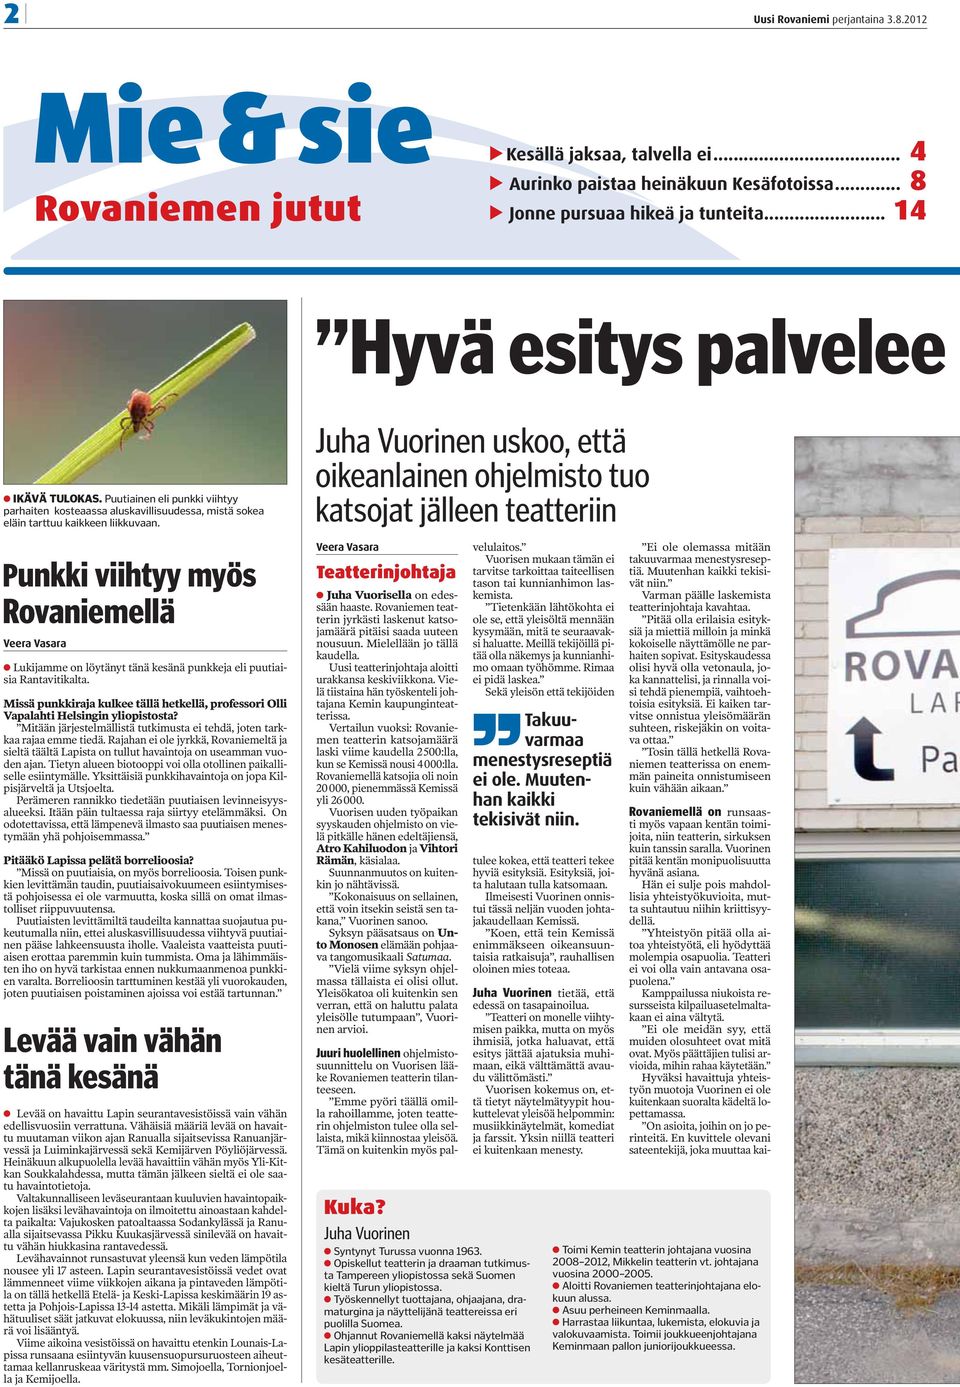 Punkki viihtyy myös Rovaniemellä Veera Vasara Lukijamme on löytänyt tänä kesänä punkkeja eli puutiaisia Rantavitikalta.